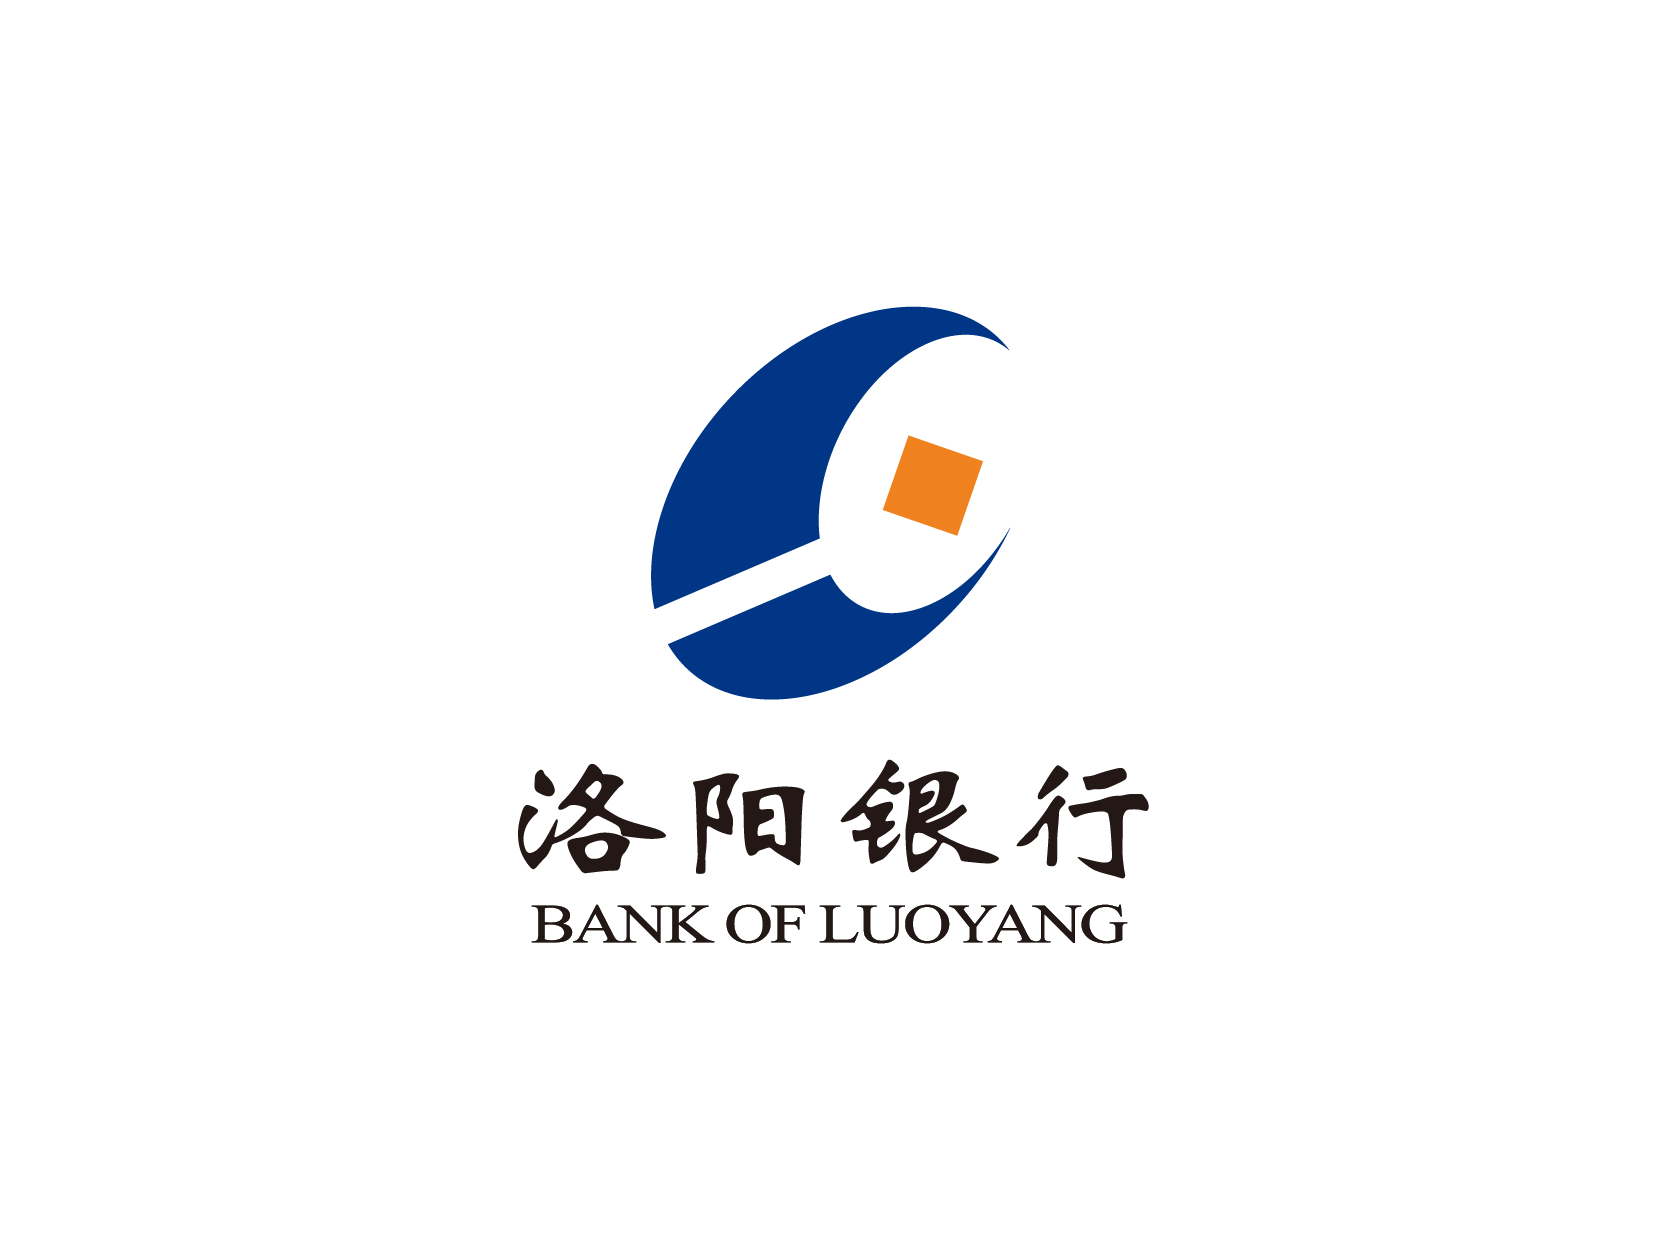 洛阳银行logo标志设计